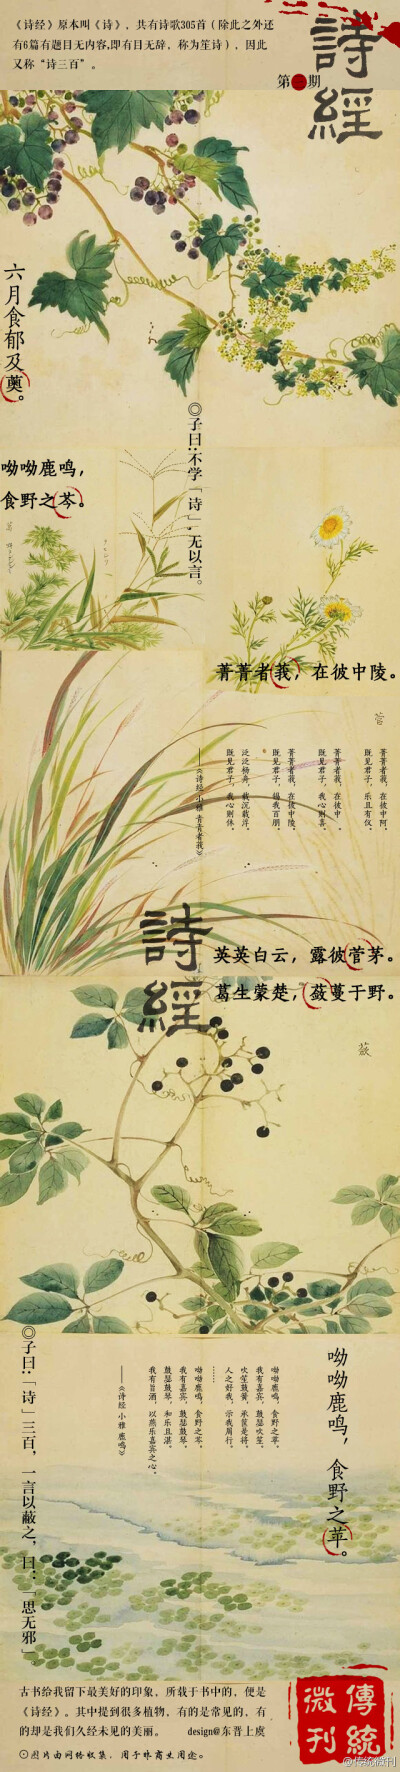 曰:思无邪 | 诗经 中国 传统 手绘 植物 绘画 国画